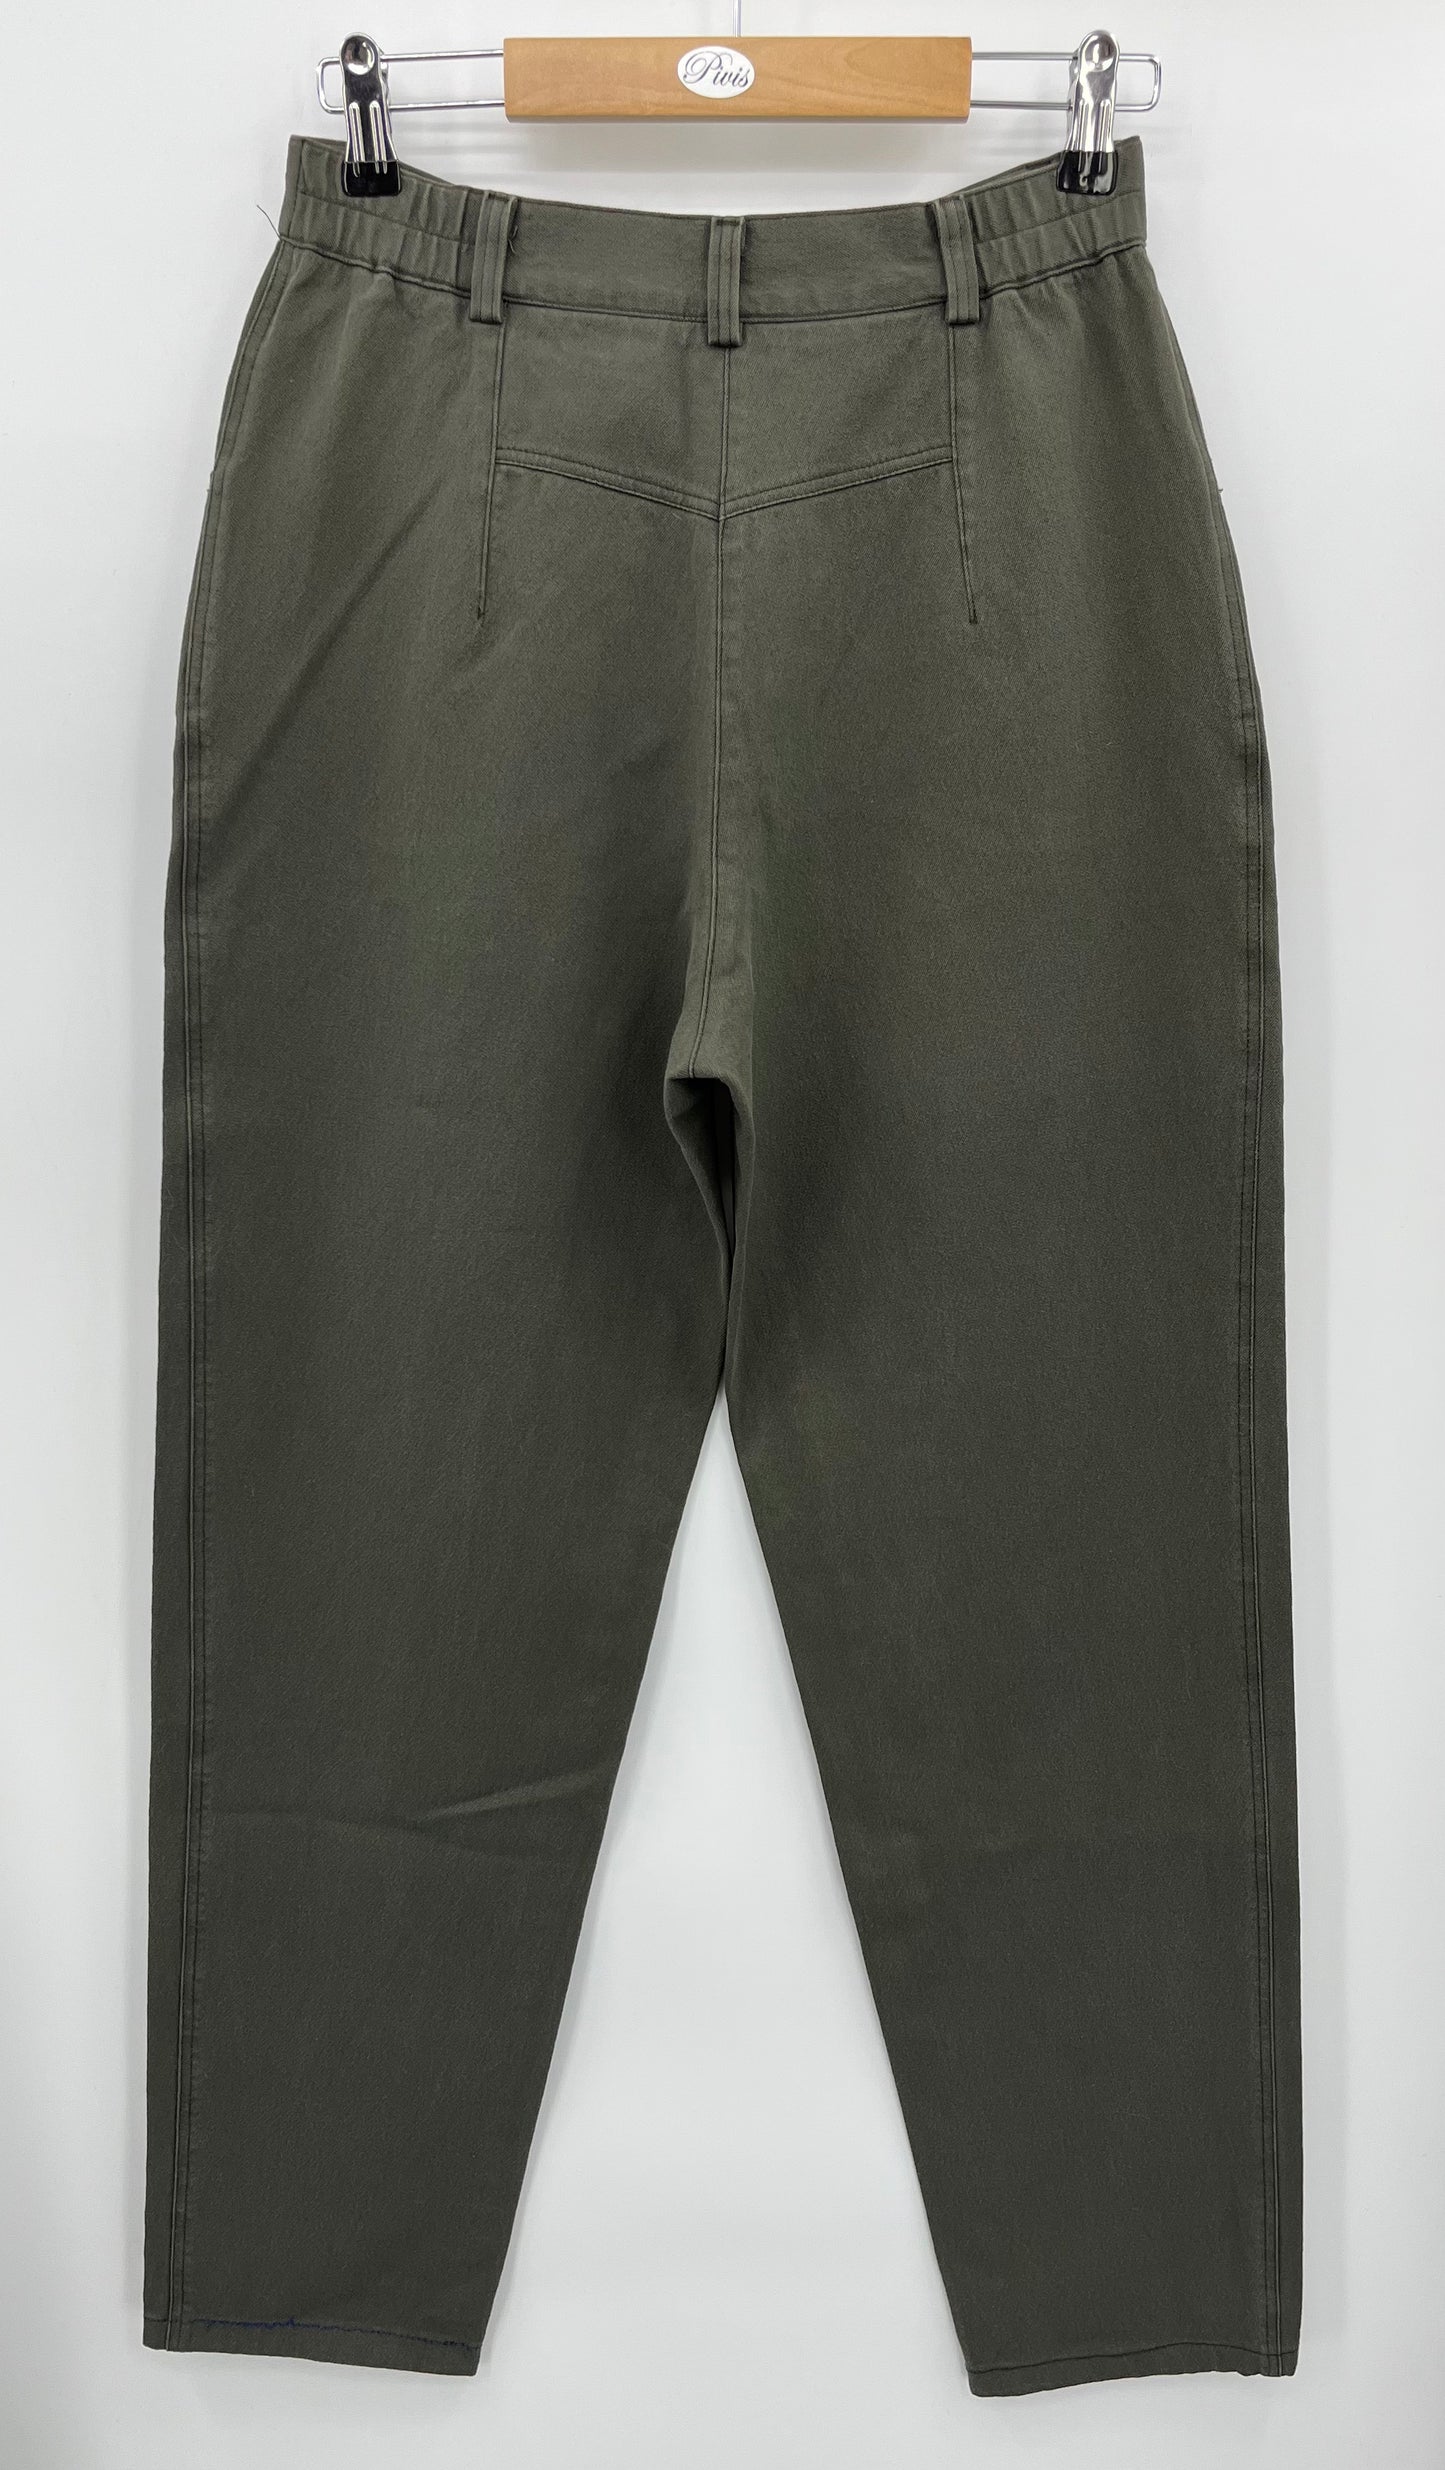 Voglia, harmaavihreät housut, 2000-luku, vyöt.ymp. 70cm, kokoarvio 36-38